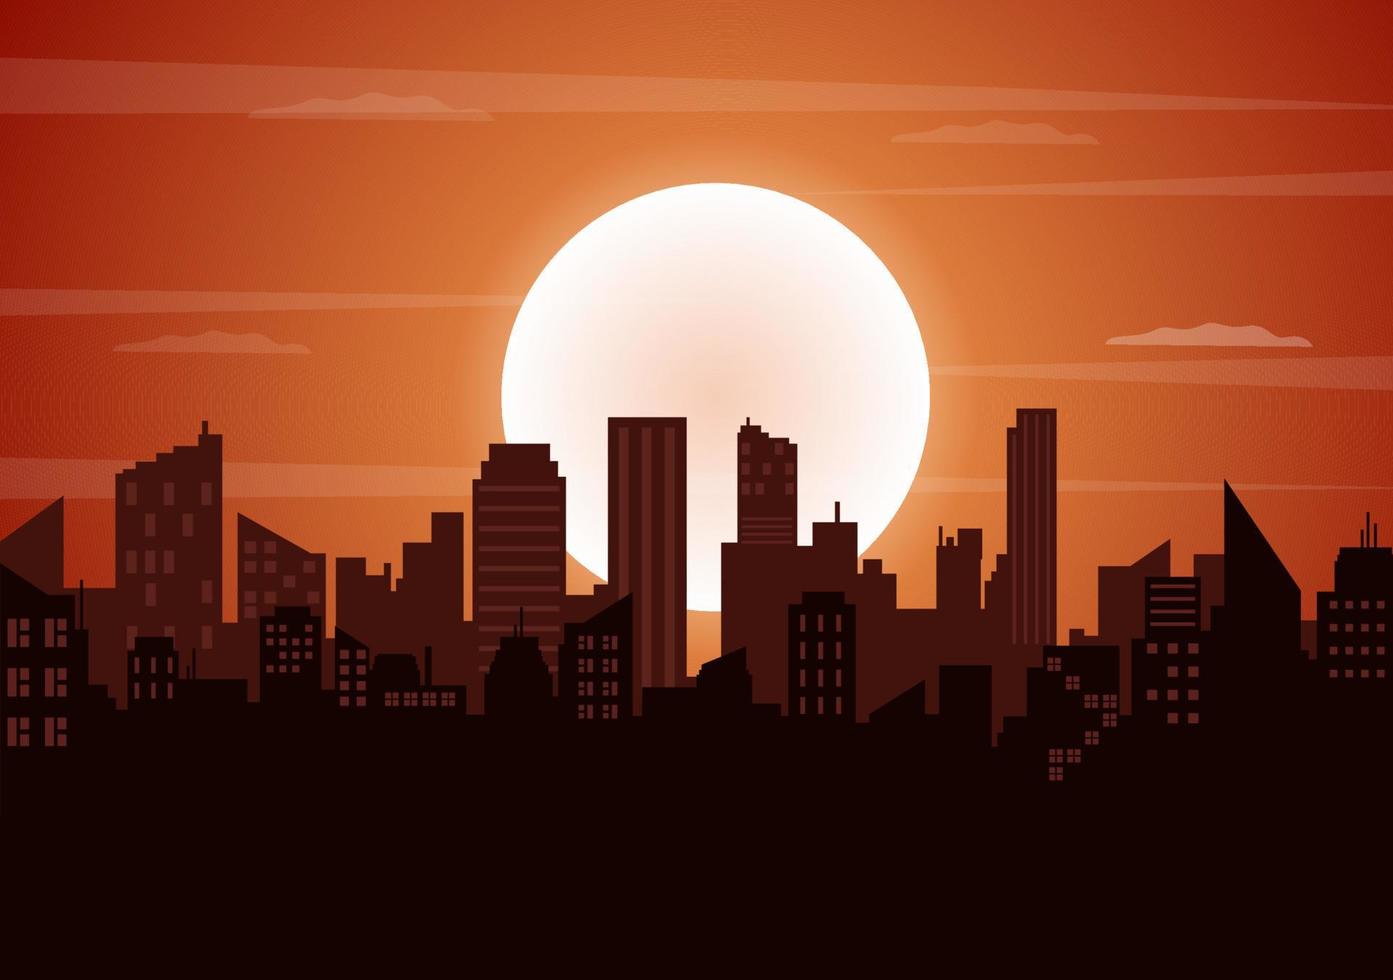 Sonnenuntergang moderne Skyline-Landschaft der Stadt mit orangefarbenem Himmel von Stadtgebäuden und Stadtbild-Himmel in flacher Illustration für Poster, Banner oder Hintergrund vektor